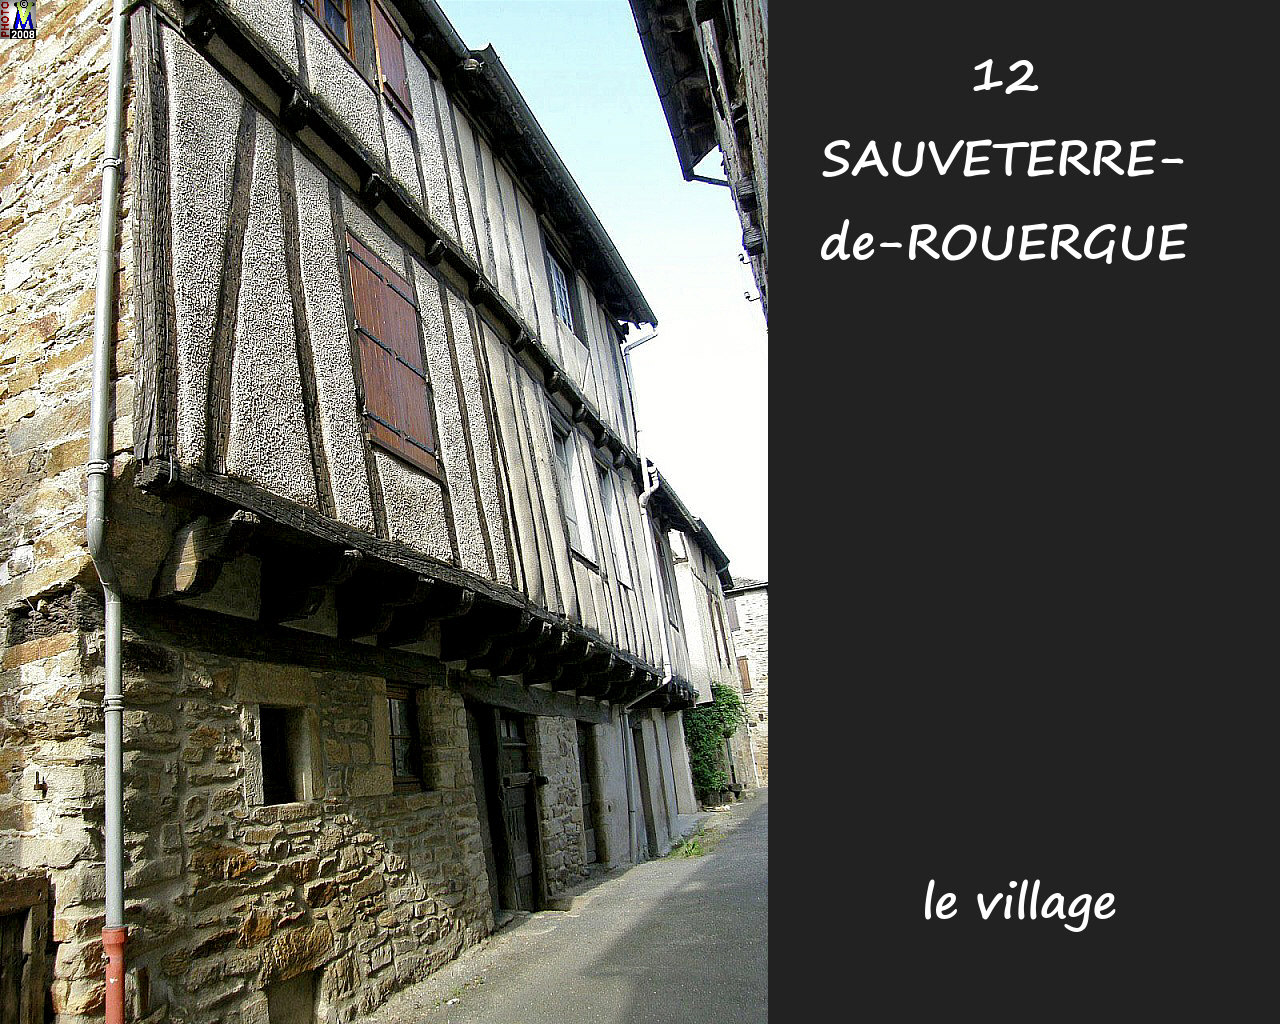 12SAUVETERRE-ROUERGUE_village_122.jpg